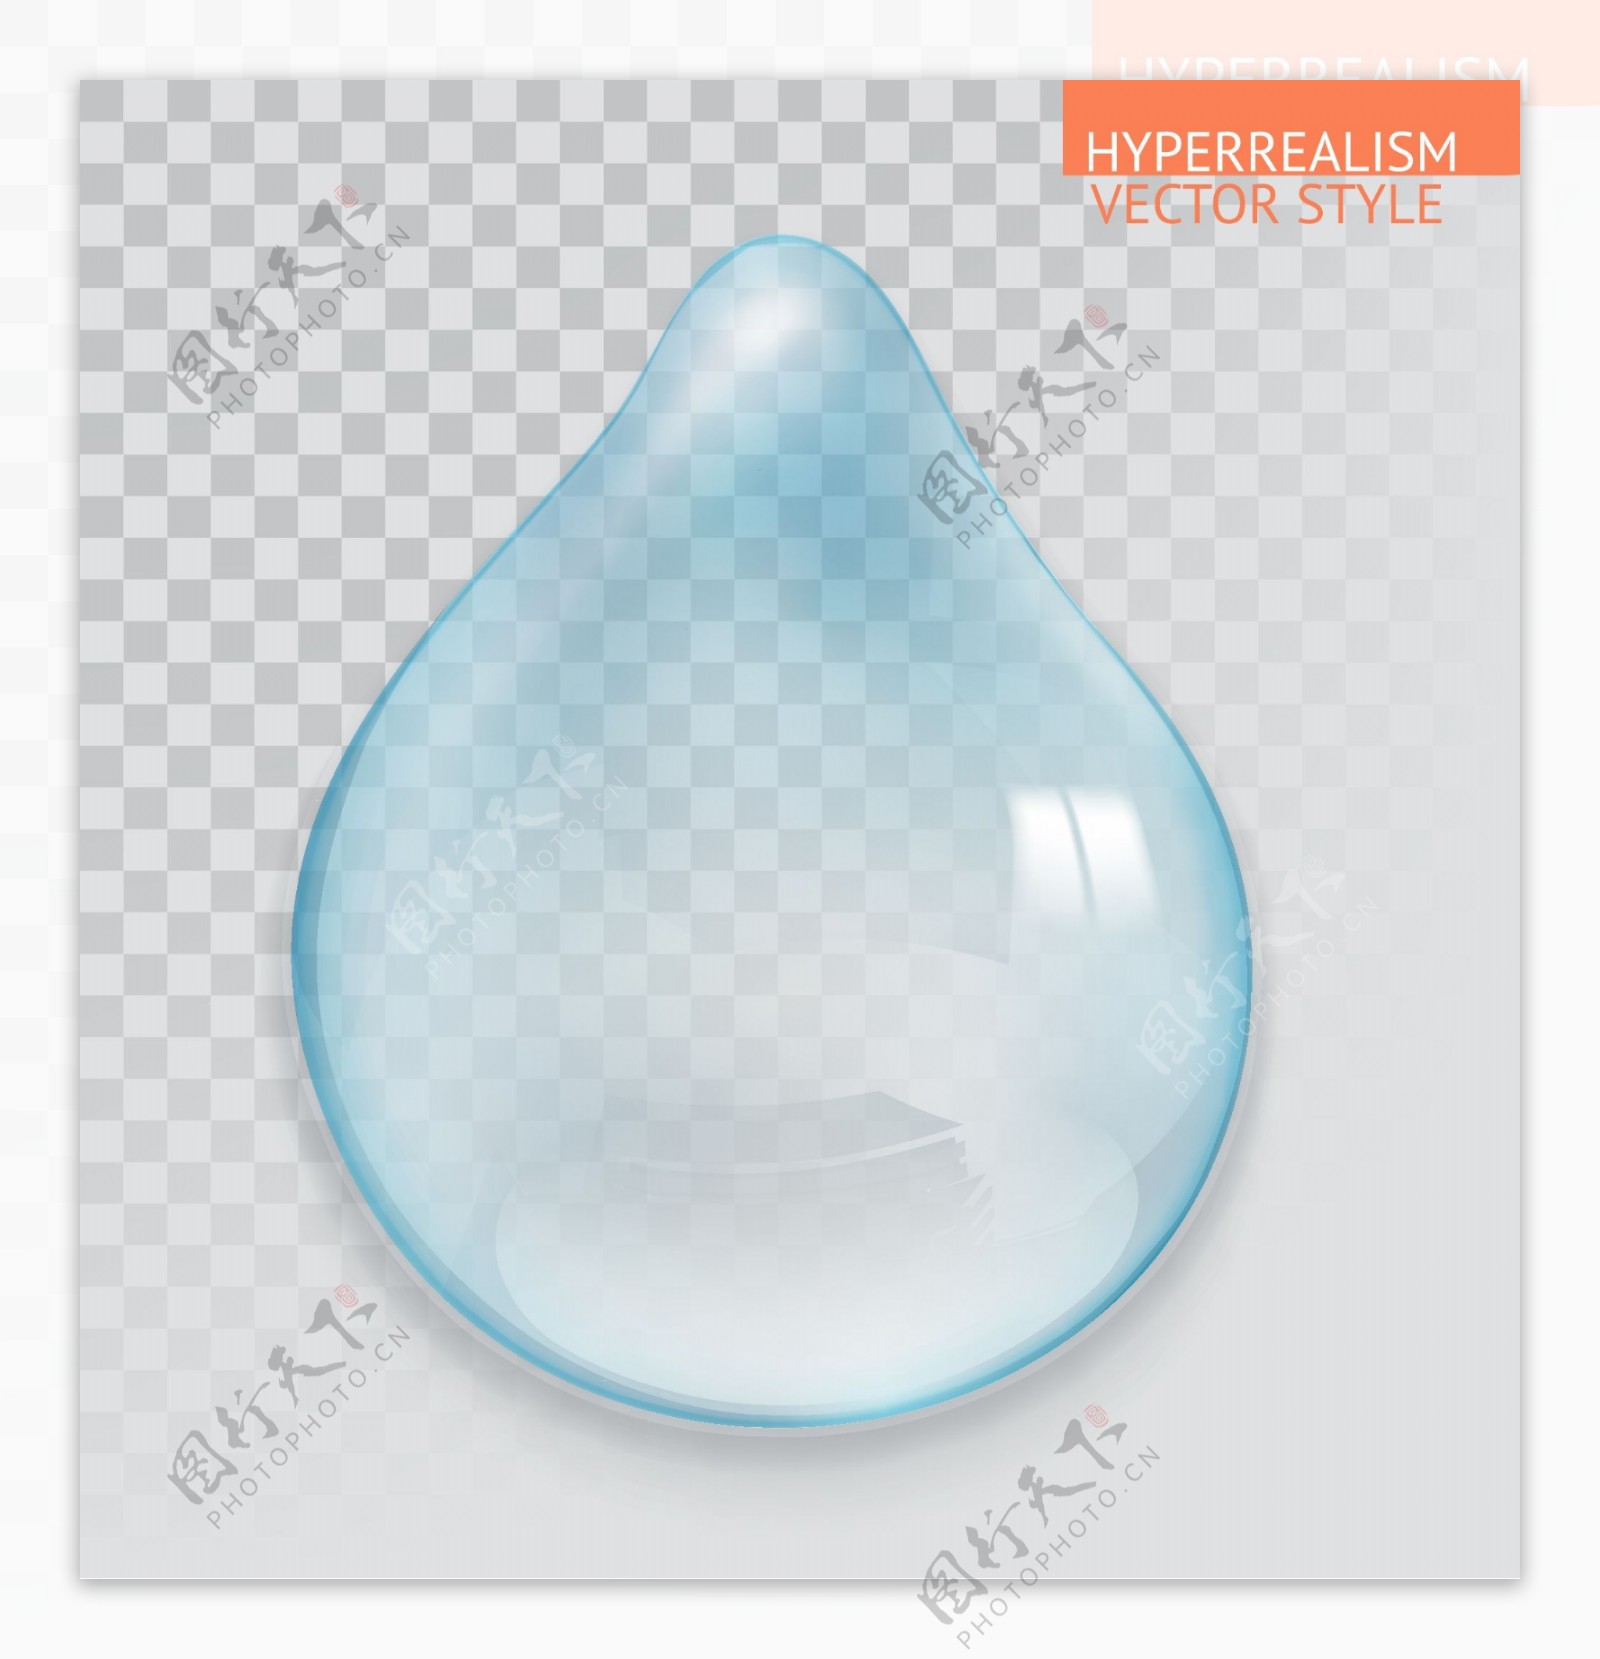 淡蓝色透明水滴矢量素材